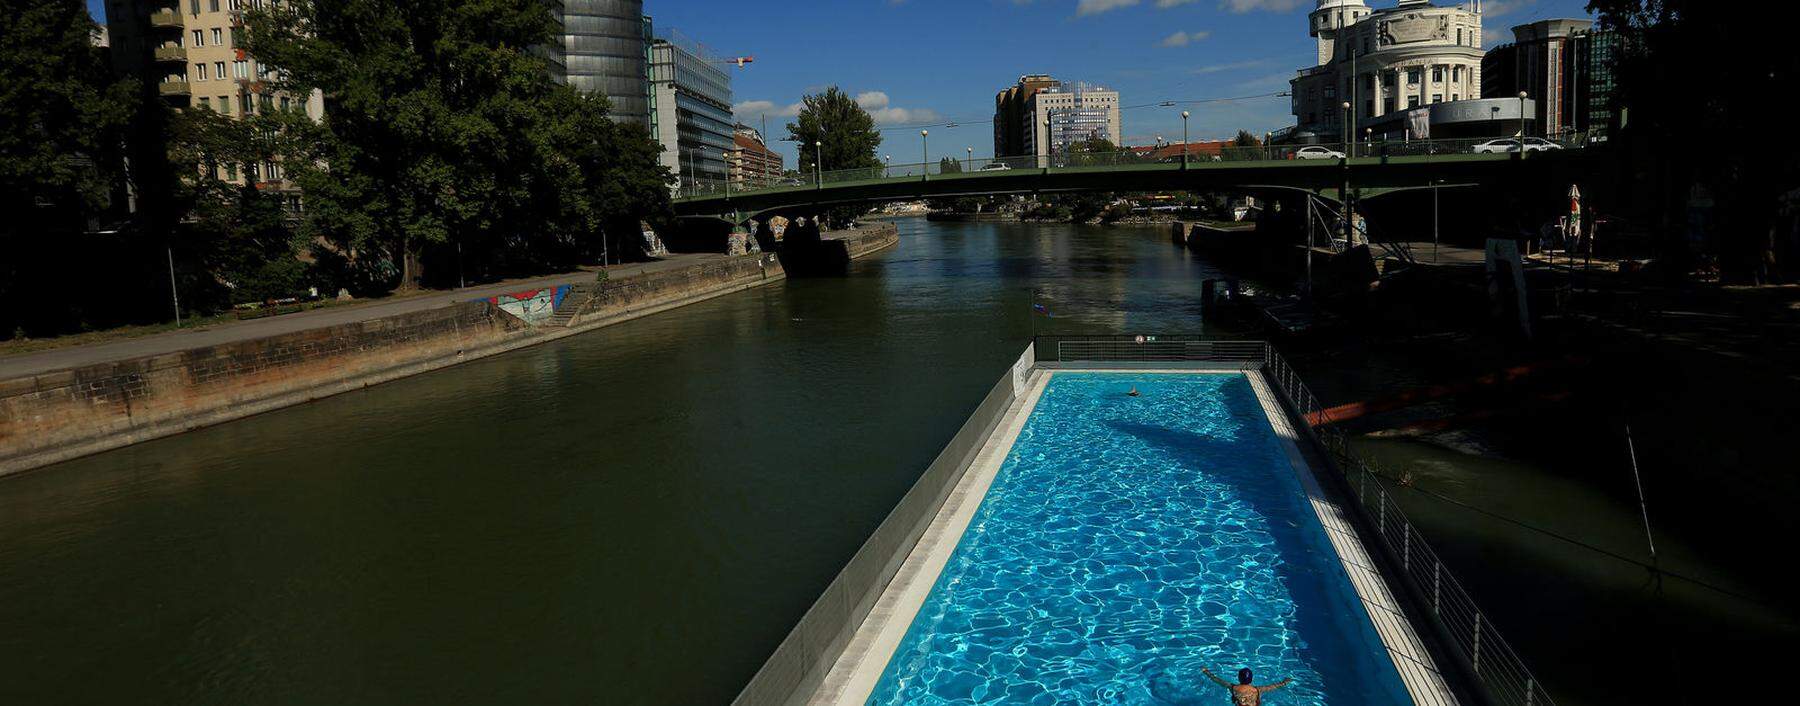 Das Badeschiff am Donaukanal hat bereits geöffnet, die städtischen Bäder folgen – wie immer – am 2. Mai